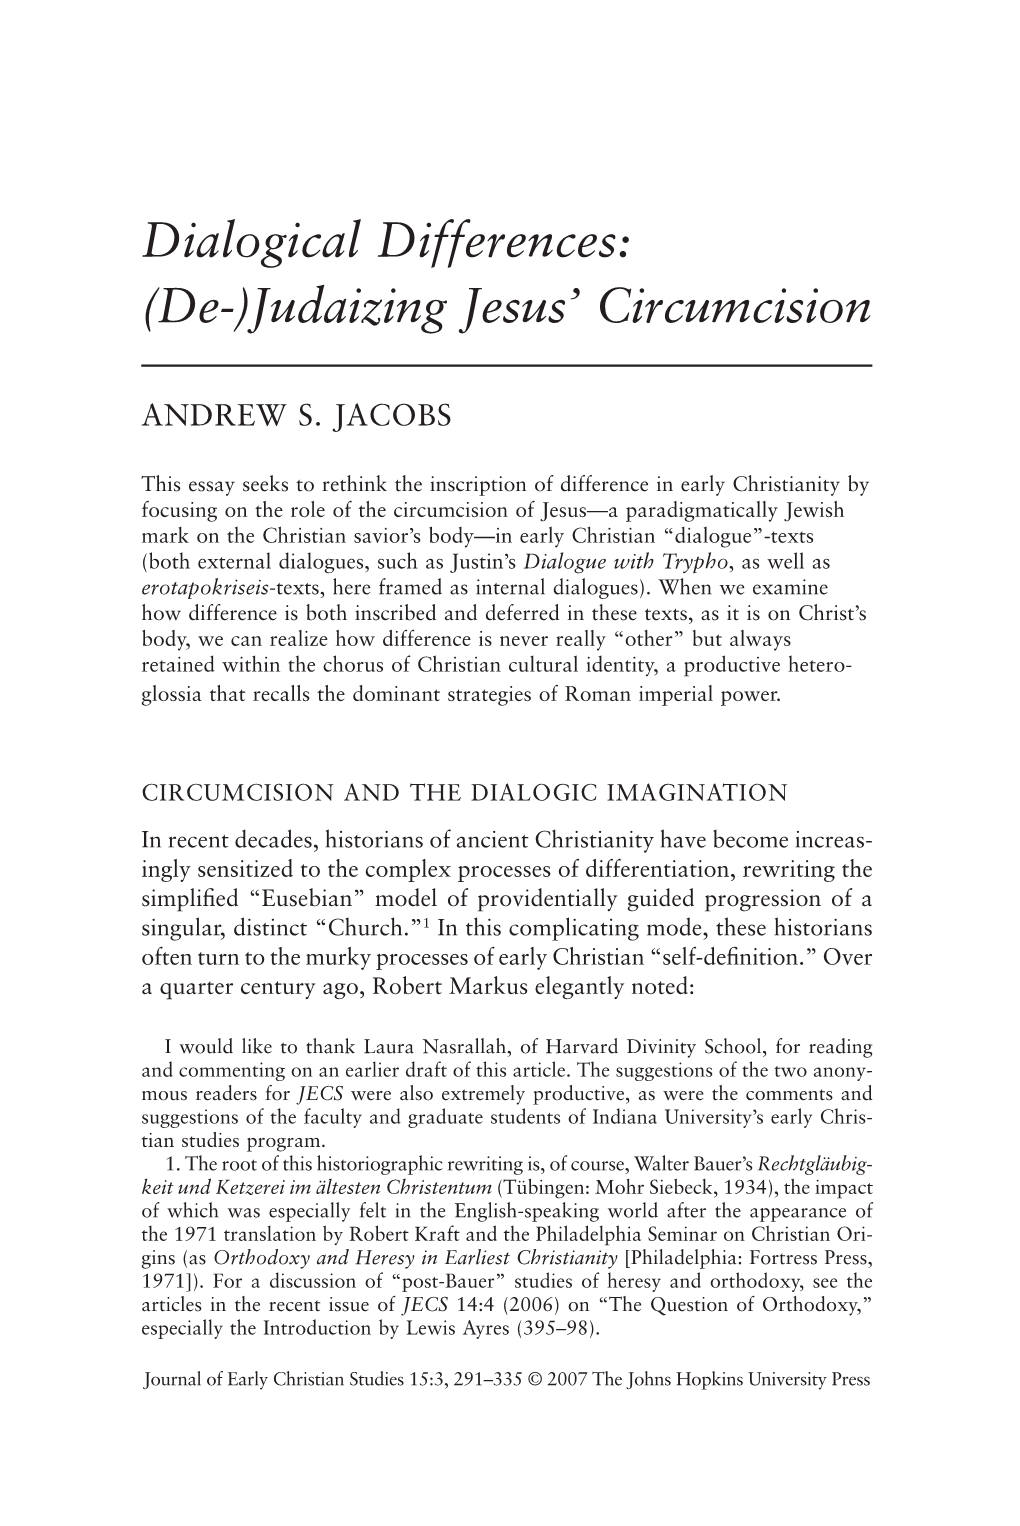 Judaizing Jesus' Circumcision